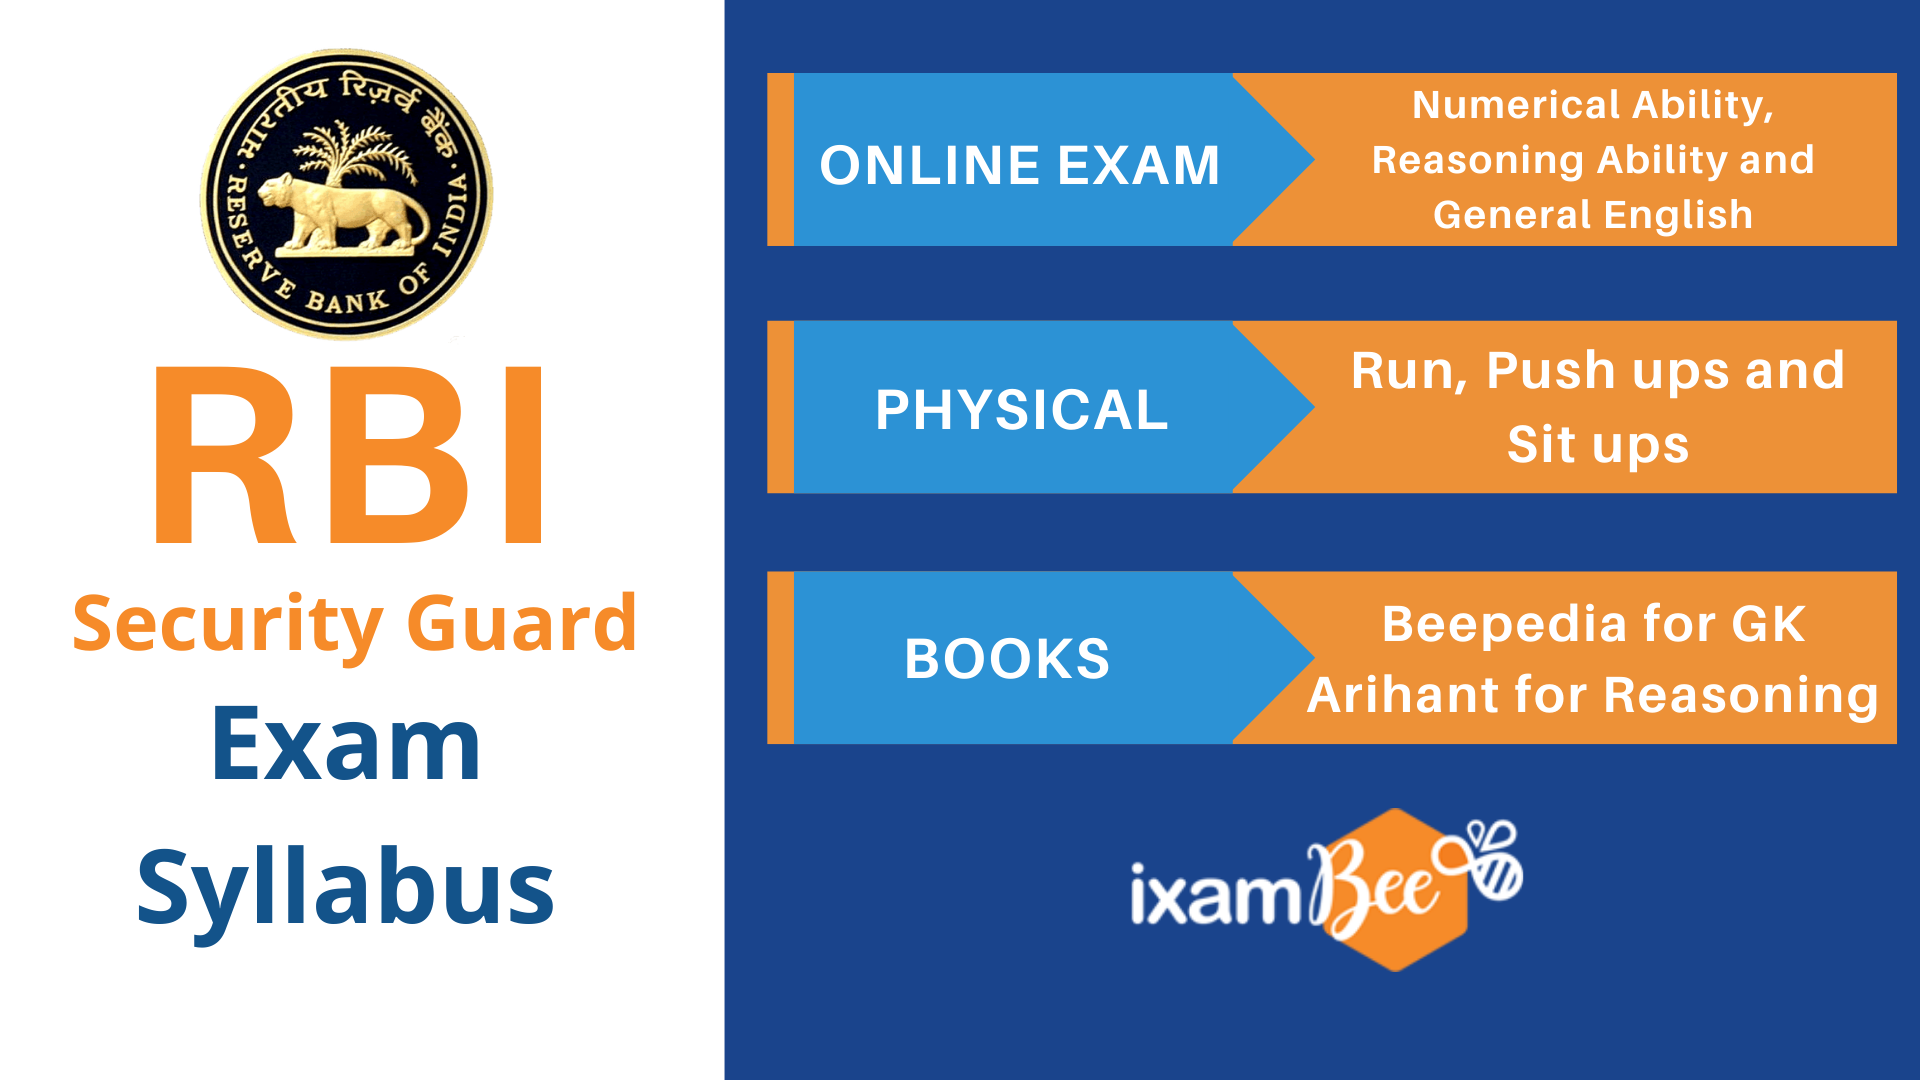 RBI Security Guard Exam Syllabus